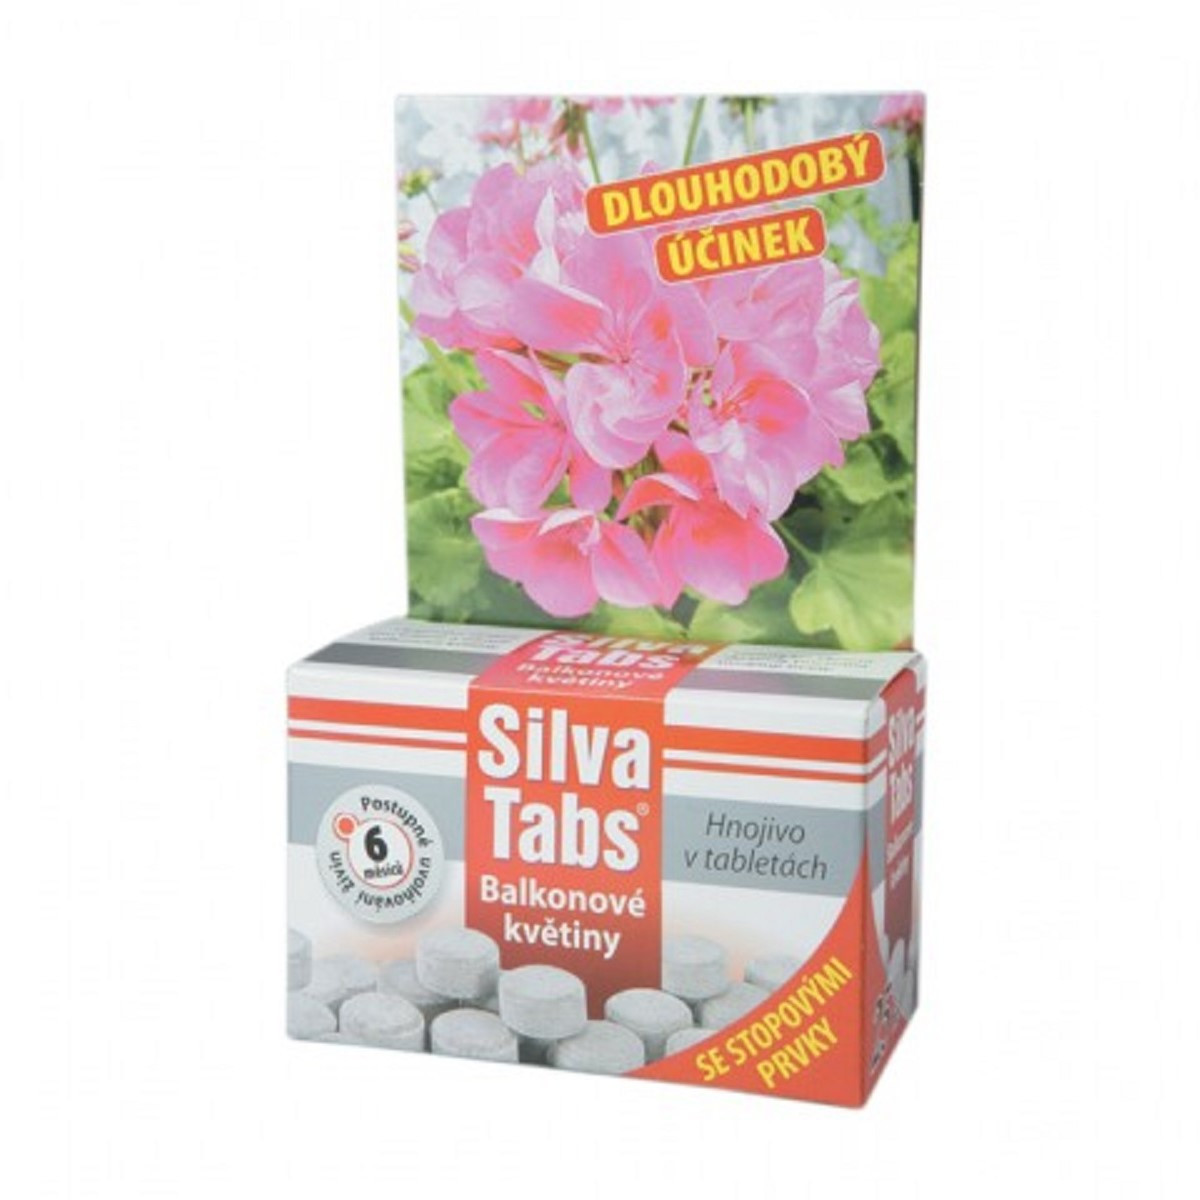 Silva Tabs pro balkónové květiny - 250 g